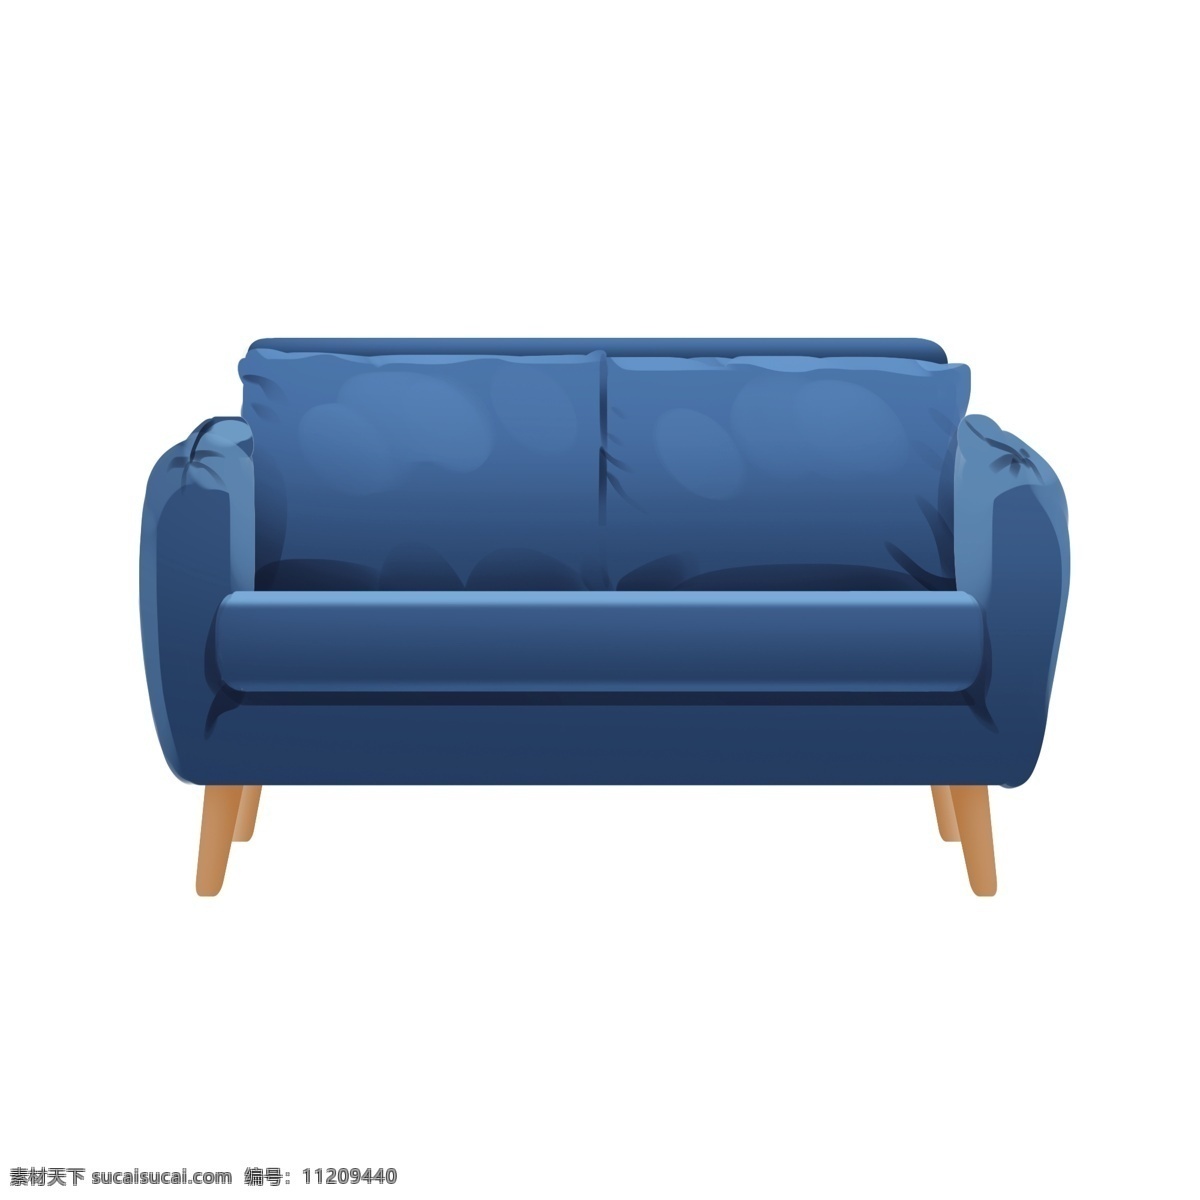 手绘 蓝色 双人 沙发 插画 蓝色双人沙发 手绘蓝色沙发 舒适的沙发 手绘家具 卡通室内家具 沙发家具插画